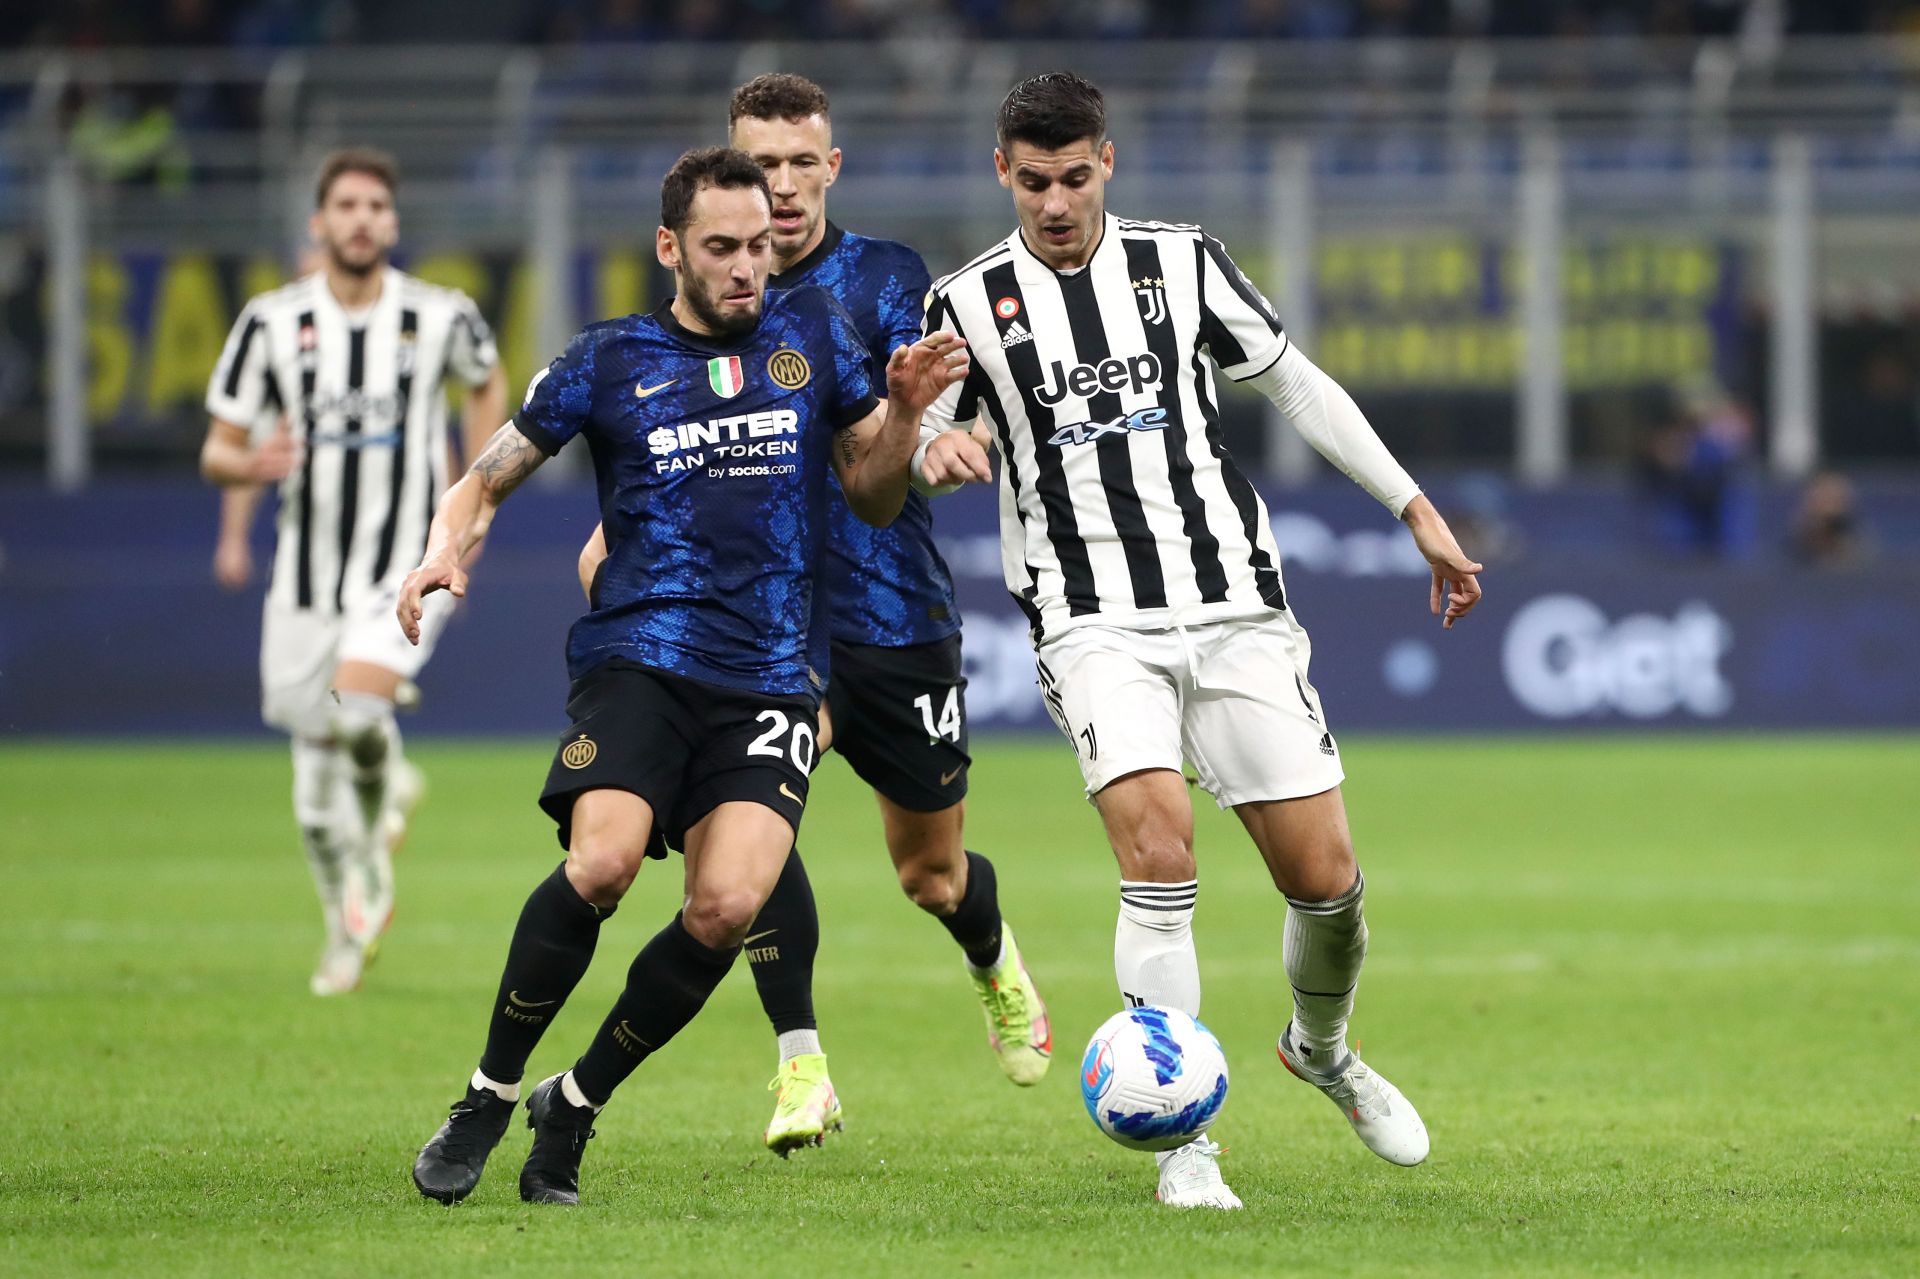 Juventus take on Inter Milan this week